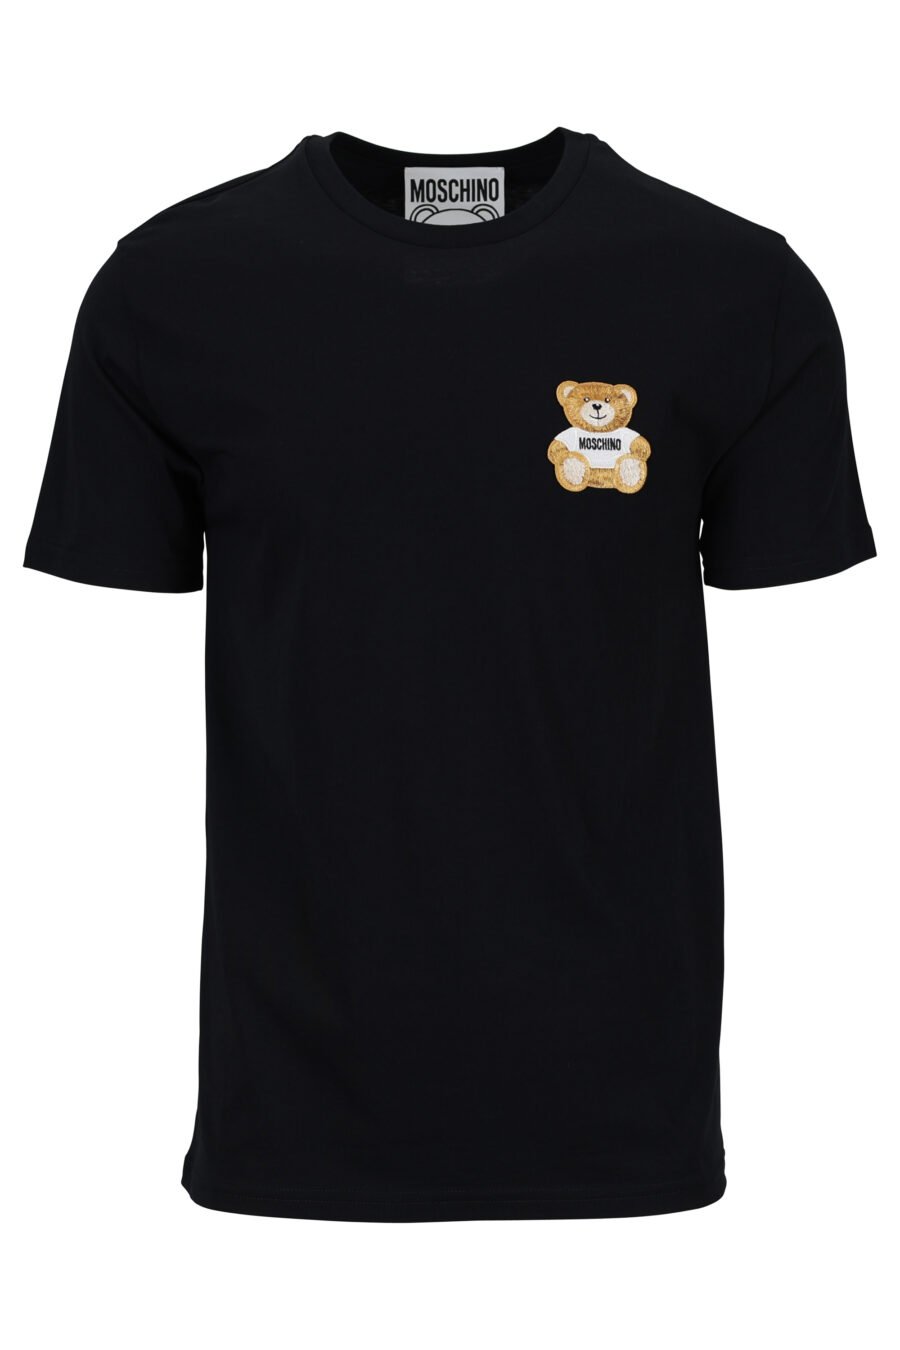 Schwarzes Öko-T-Shirt mit Bären-Mini-Logo - 889316853063